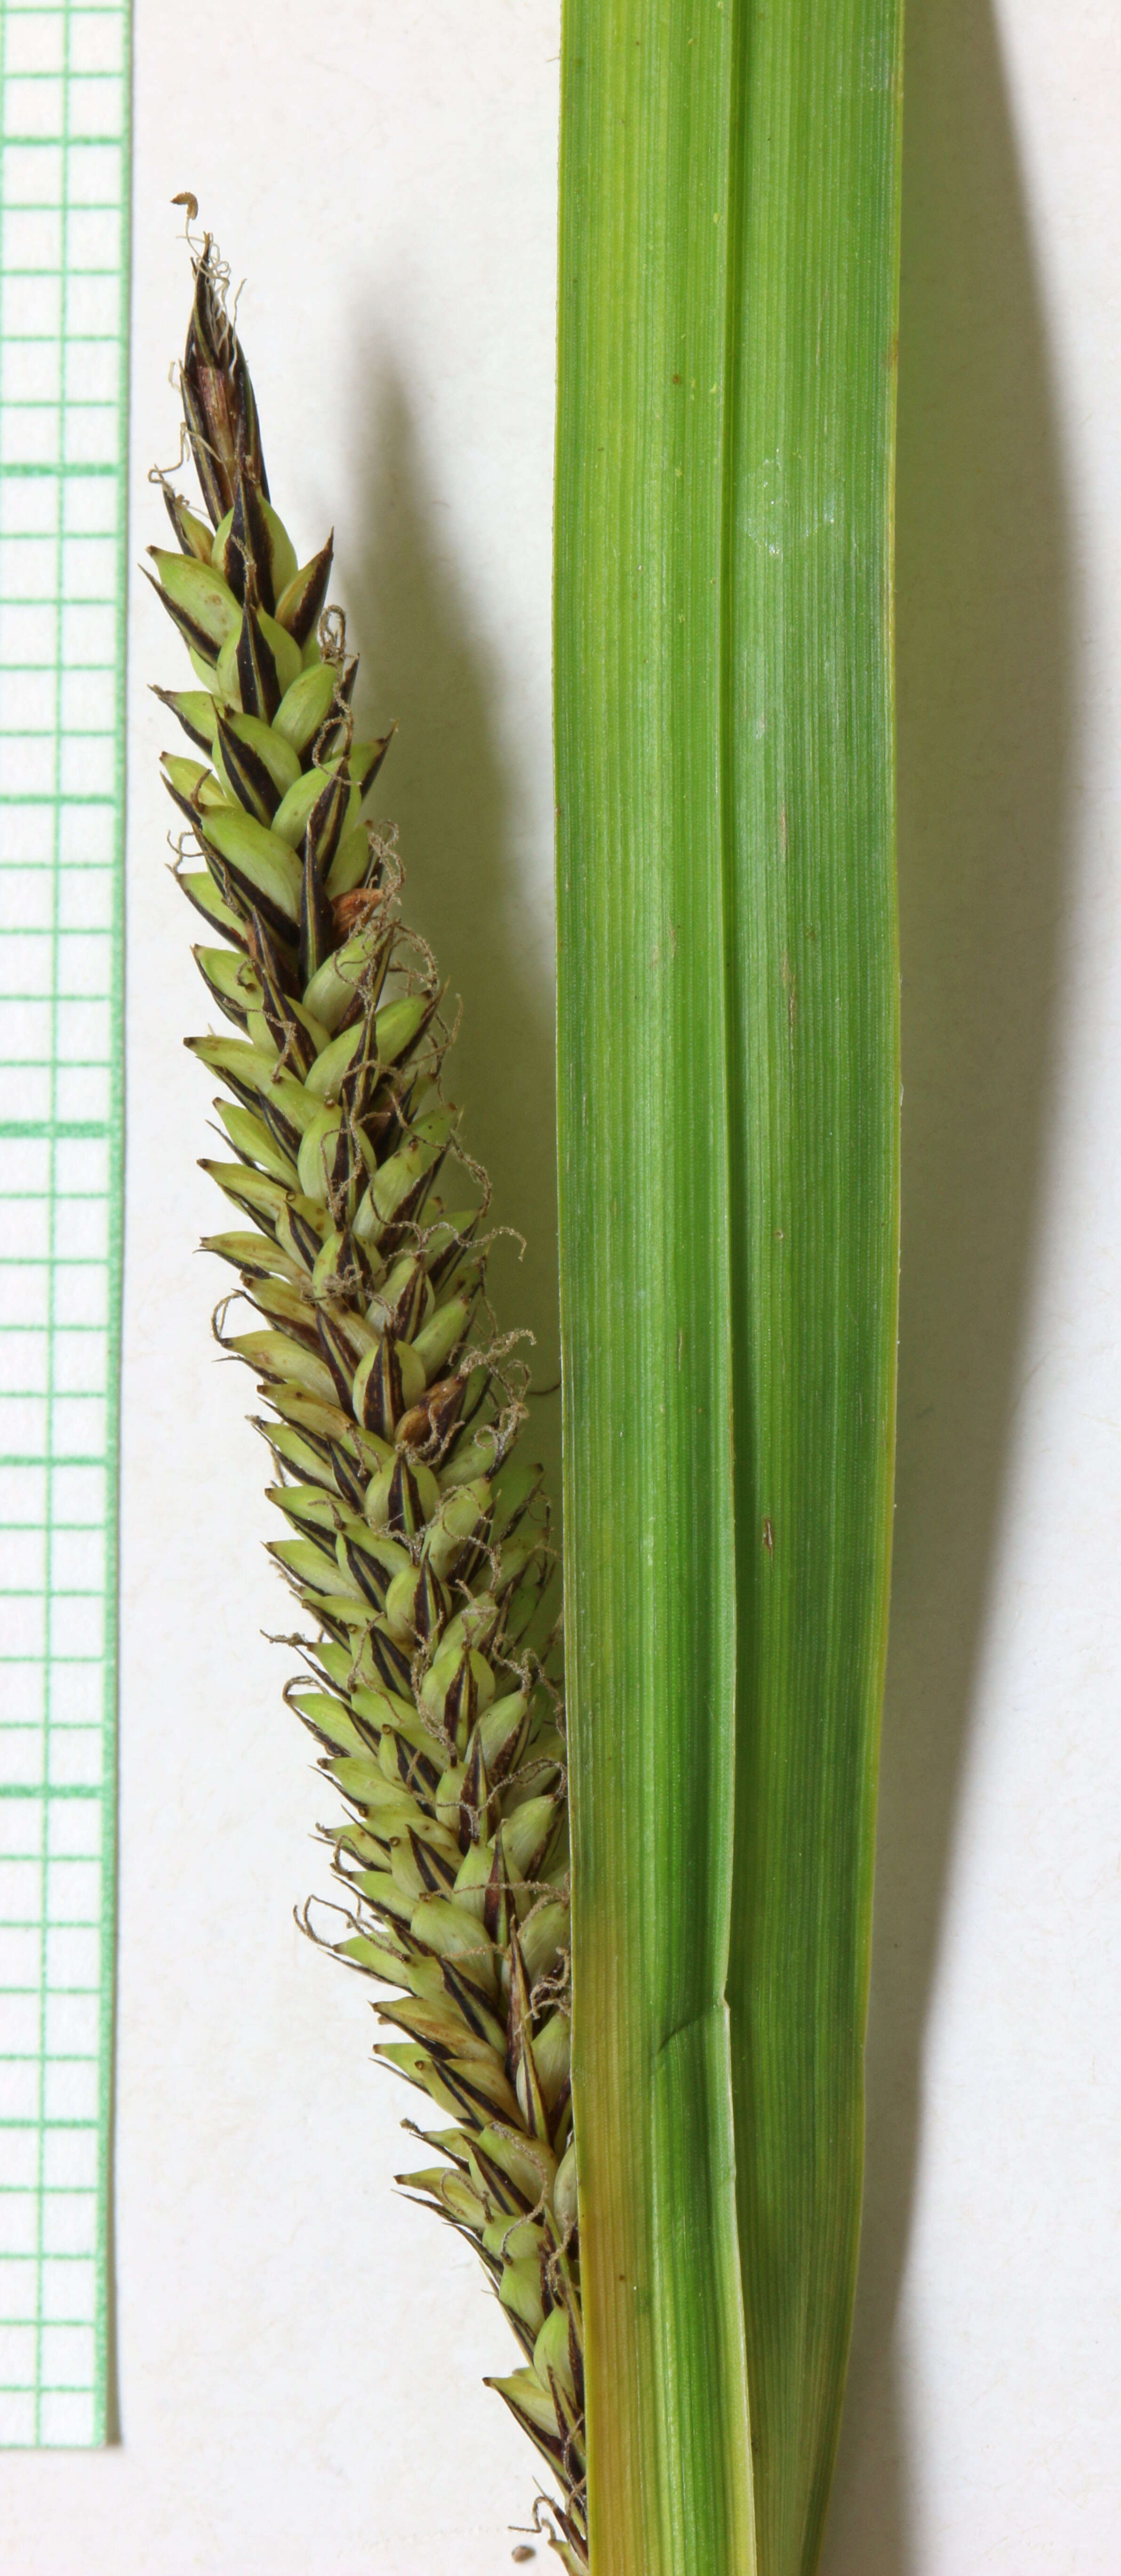 Image de Carex de nebraska